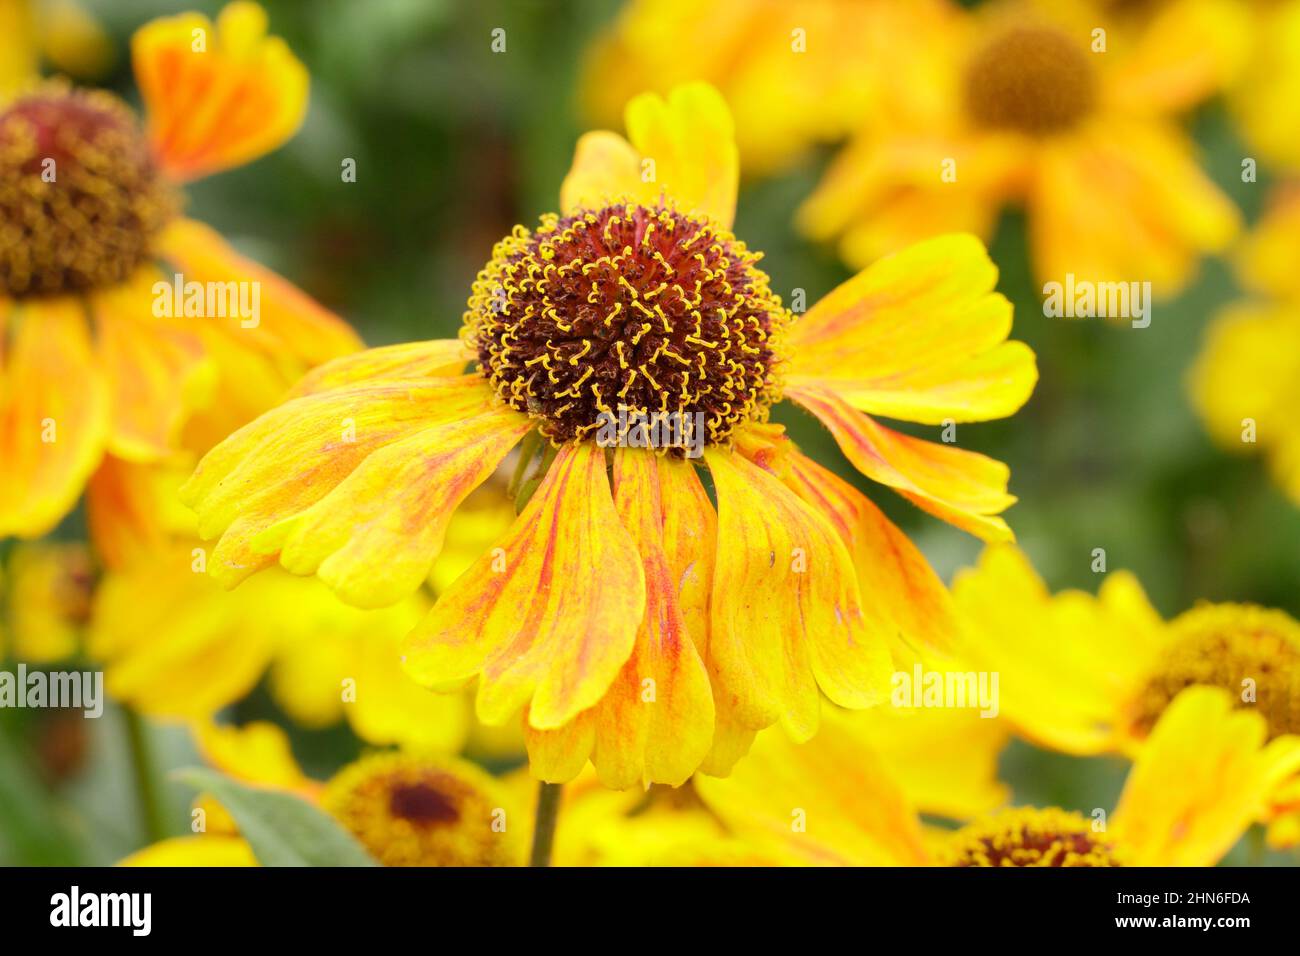 Helenium Wyndley sneezeweed flores, una variedad corta que florece a finales de verano, a principios de otoño. REINO UNIDO Foto de stock